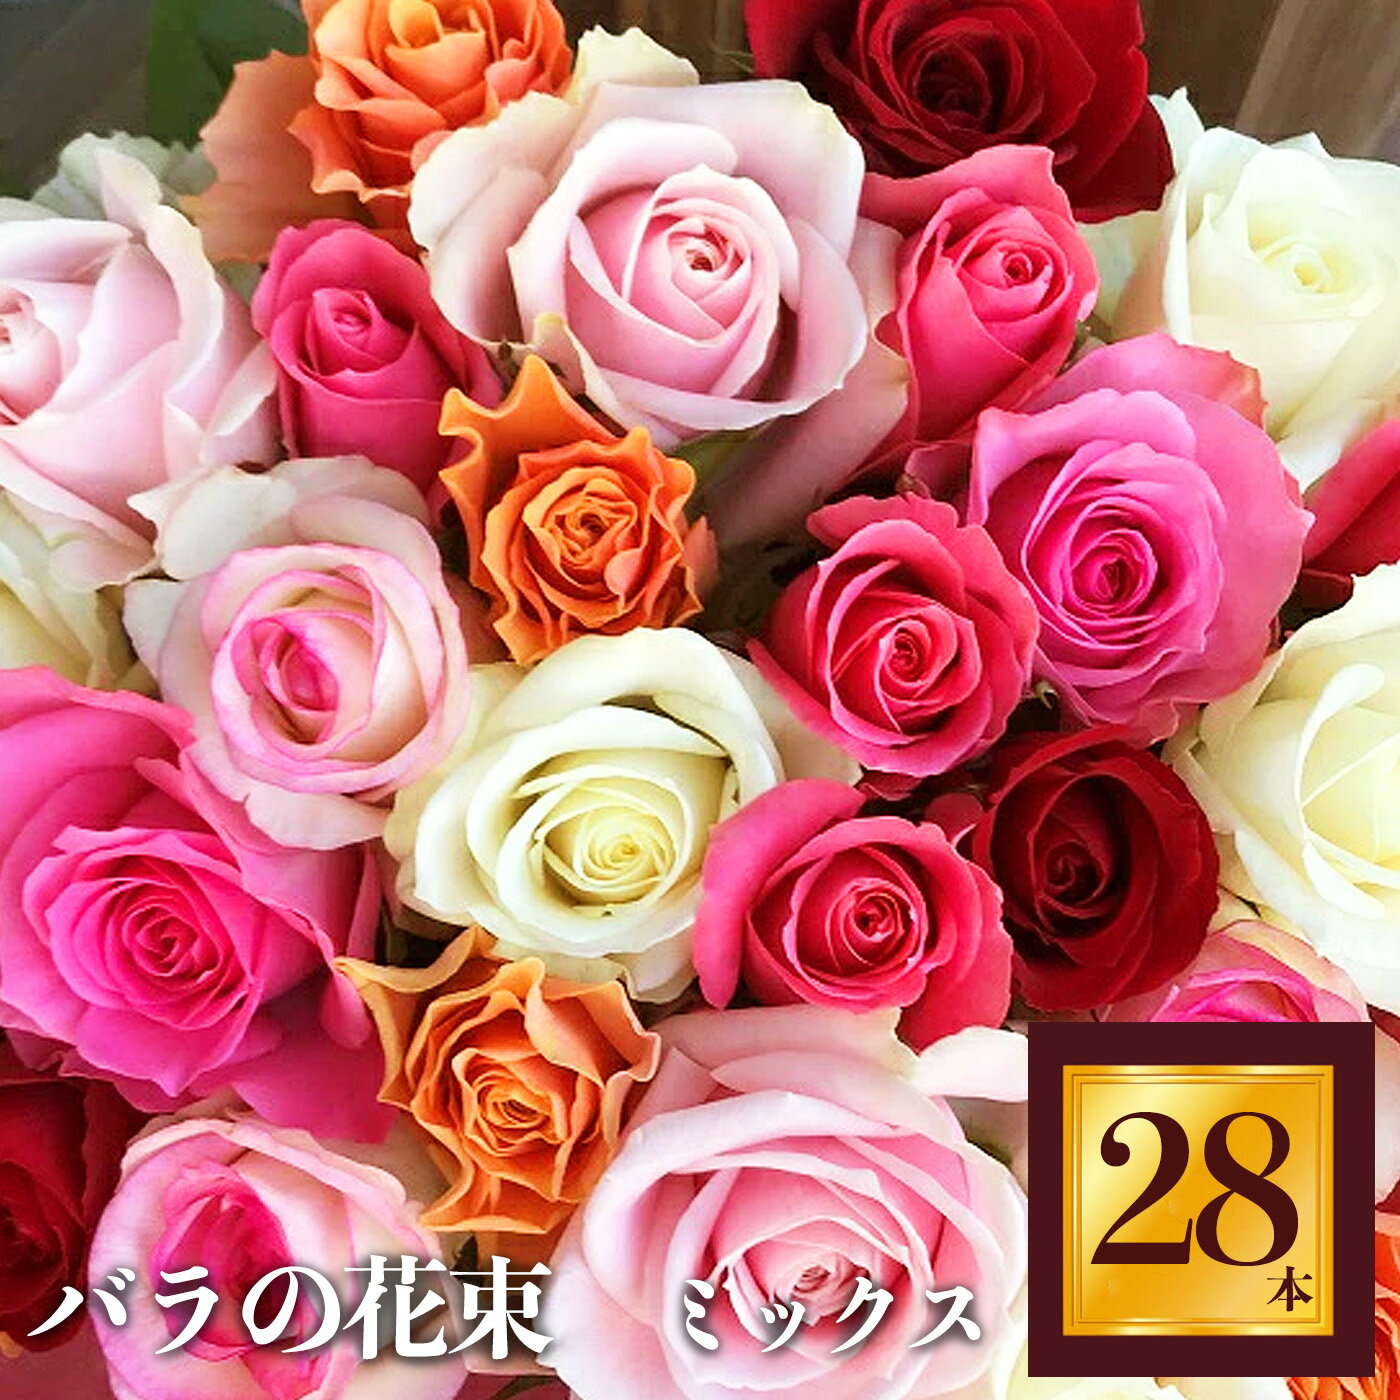 16位! 口コミ数「0件」評価「0」Heguri Rose バラの花束（28本） ローズ フラワー 新鮮 高品質 綺麗 平群のバラ 花束 平群ブランド 誕生日 記念日 お祝い